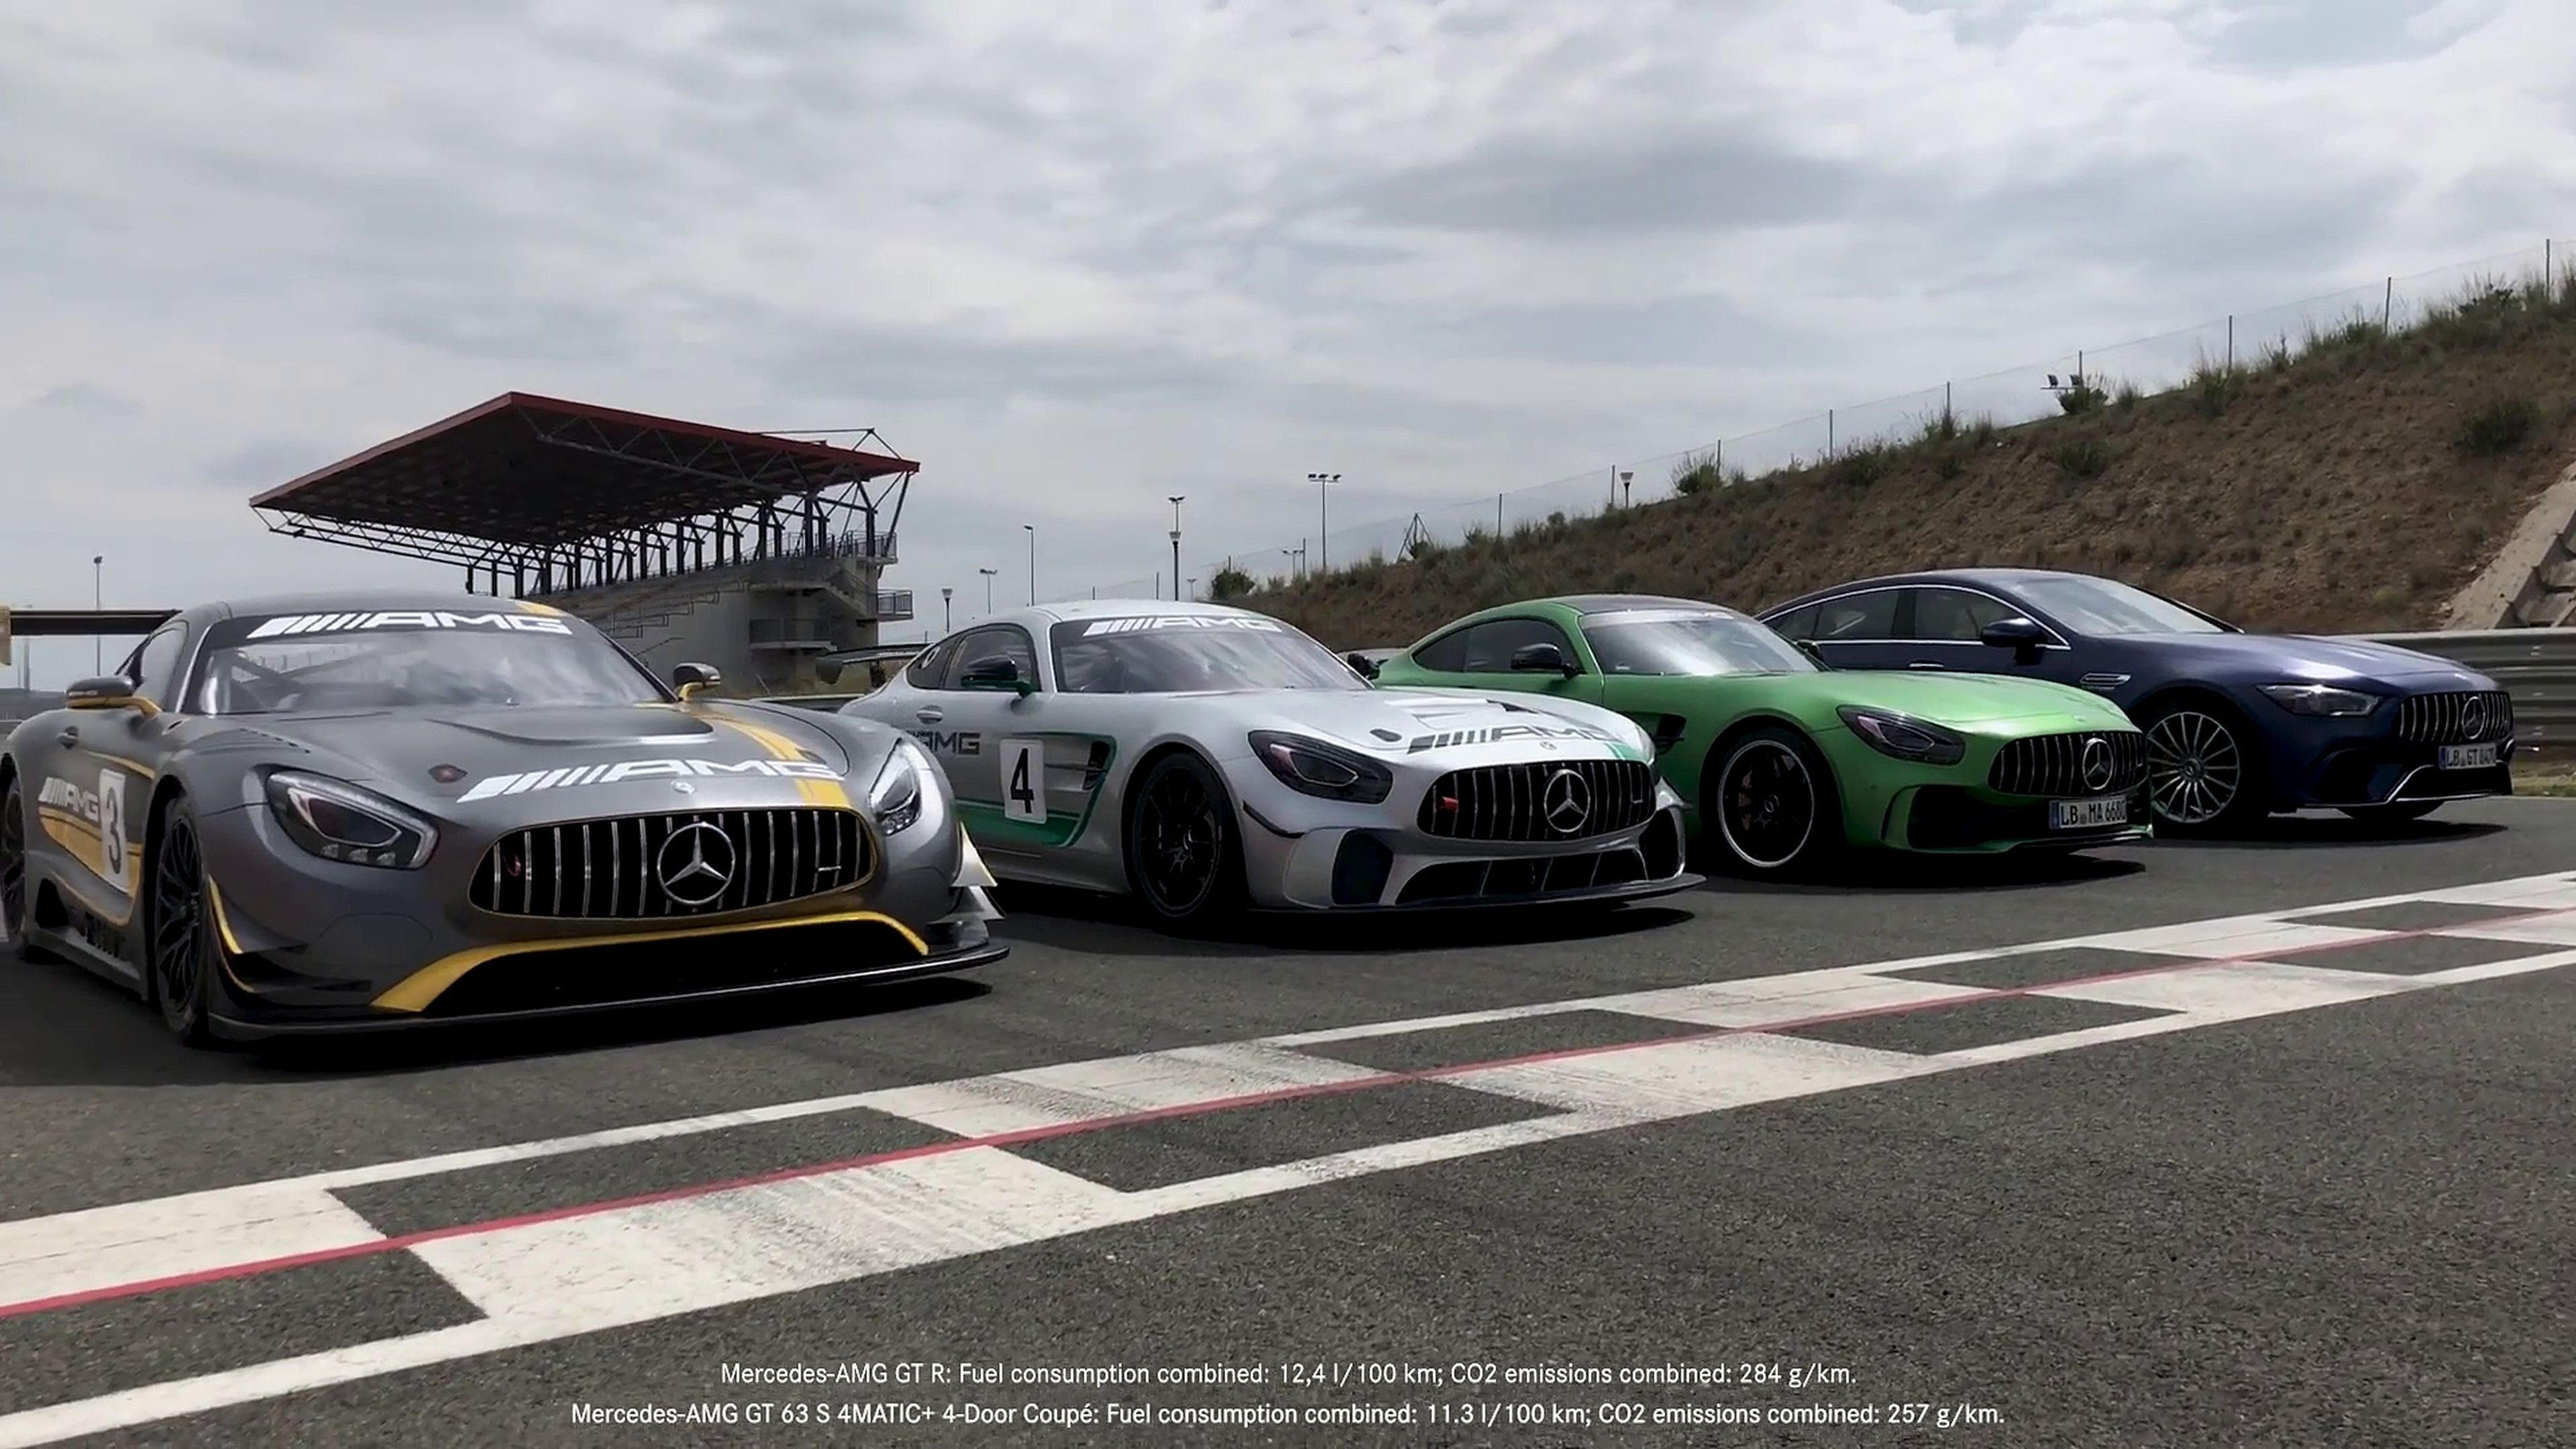 Vídeo: ¡la familia Mercedes-AMG GT arrasa en circuito! [TG]